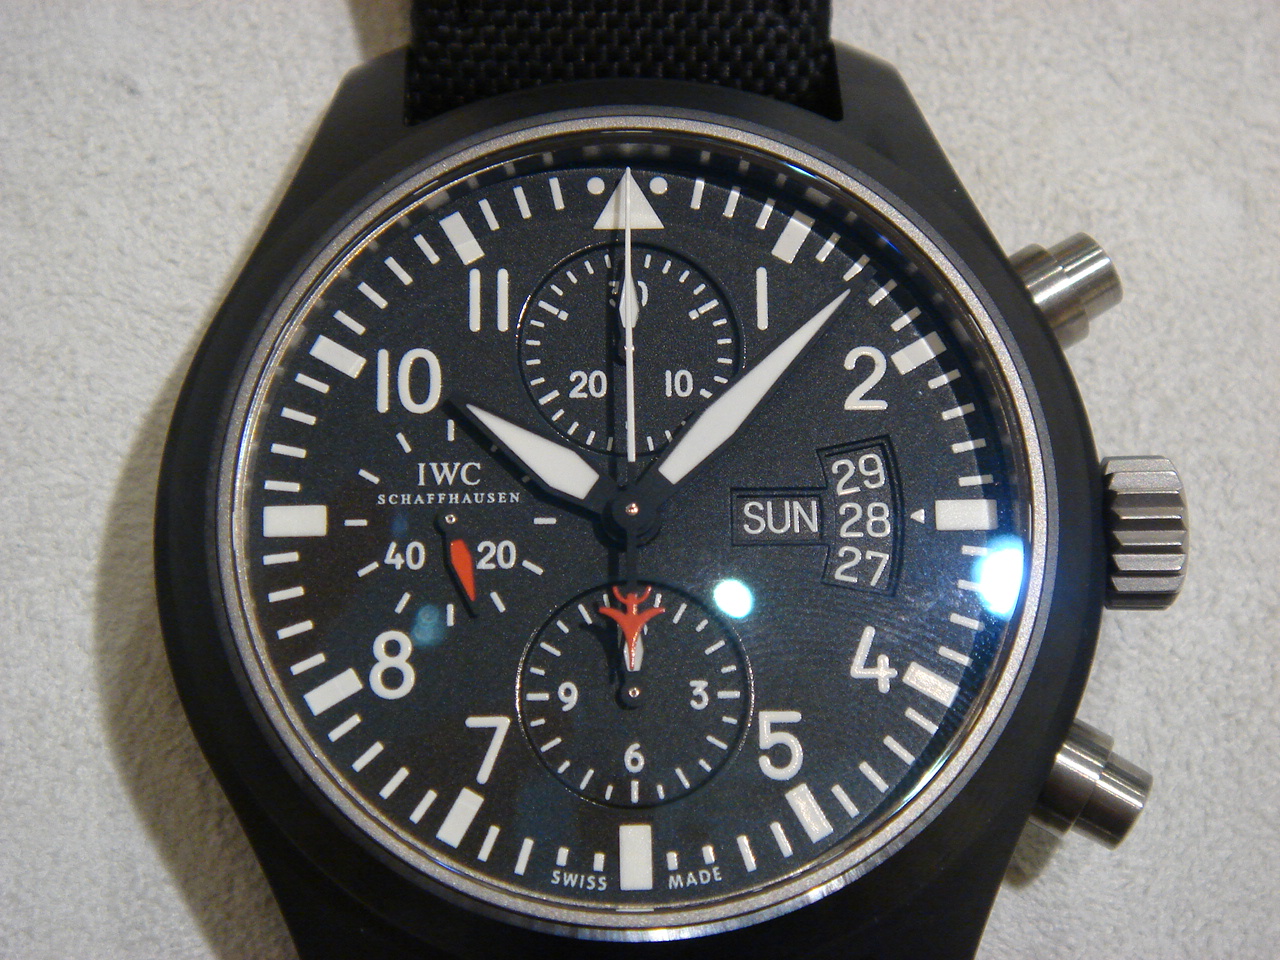 HF-AGE京都店素敵な時計のブログ:IWC パイロット・ウォッチ・クロノ・オートマティック “トップガン” - livedoor Blog（ブログ）